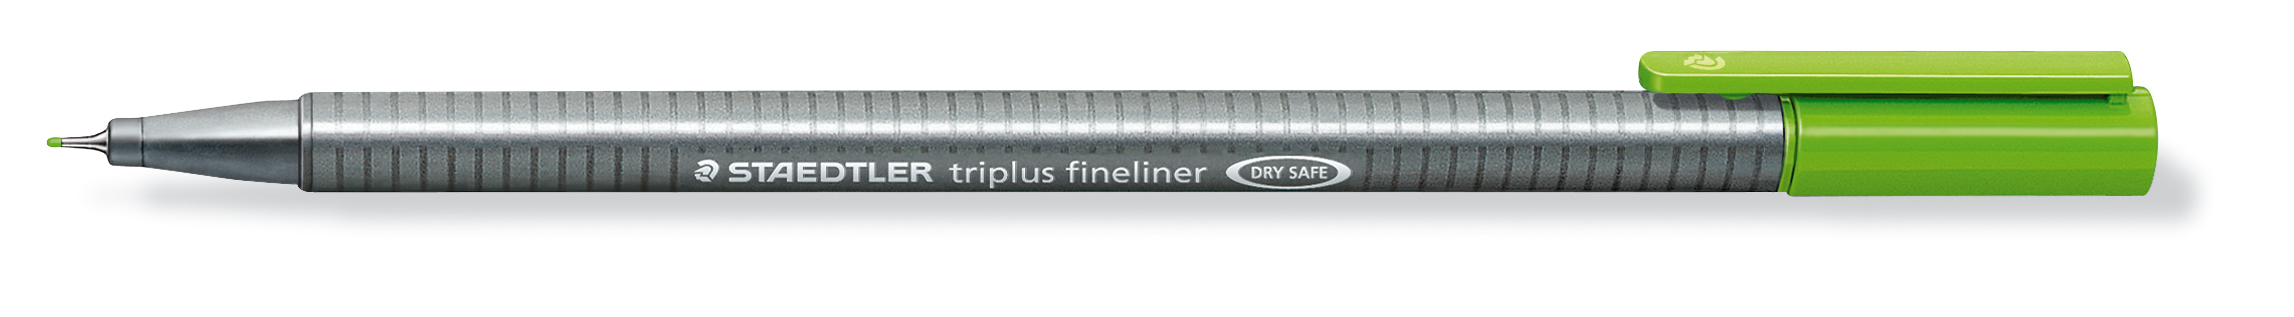 STAEDTLER Triplus Fineliner 0,3mm 334-51 gelbgrün